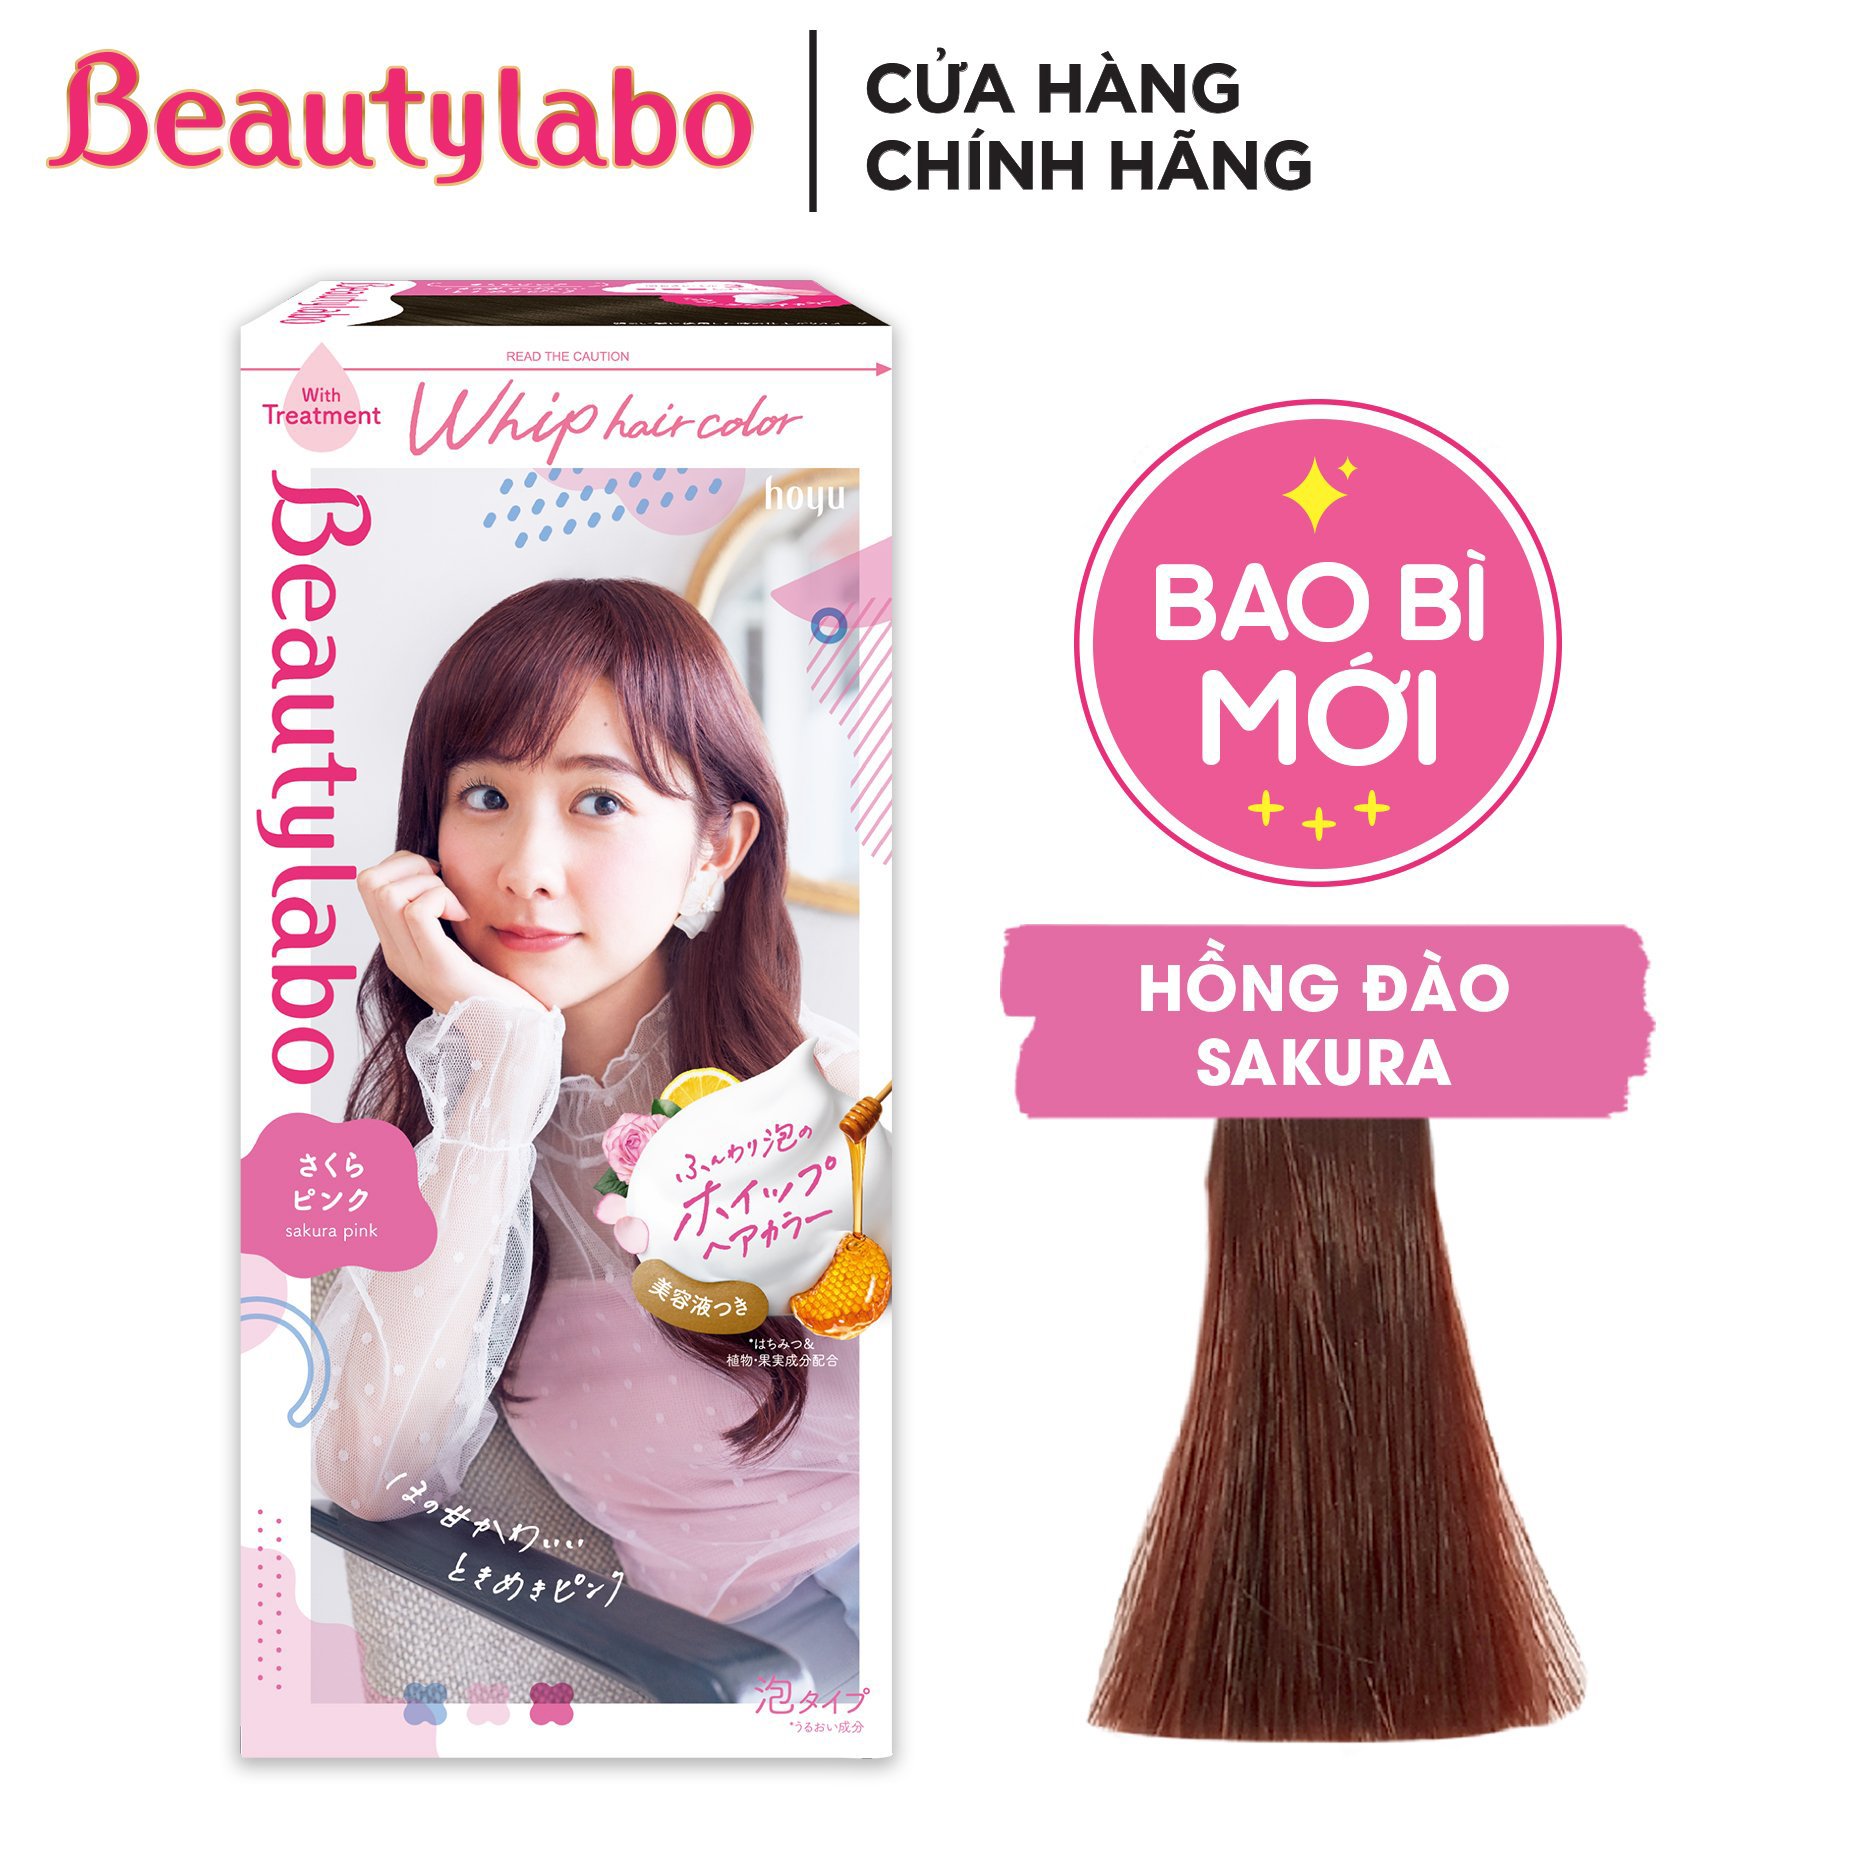 Beautylabo là thương hiệu nổi tiếng của Nhật Bản với bộ sưu tập thuốc nhuộm tóc đa dạng và chất lượng tuyệt vời. Với Beautylabo, bạn sẽ dễ dàng sở hữu một mái tóc đẹp và nổi bật trong mọi hoàn cảnh.